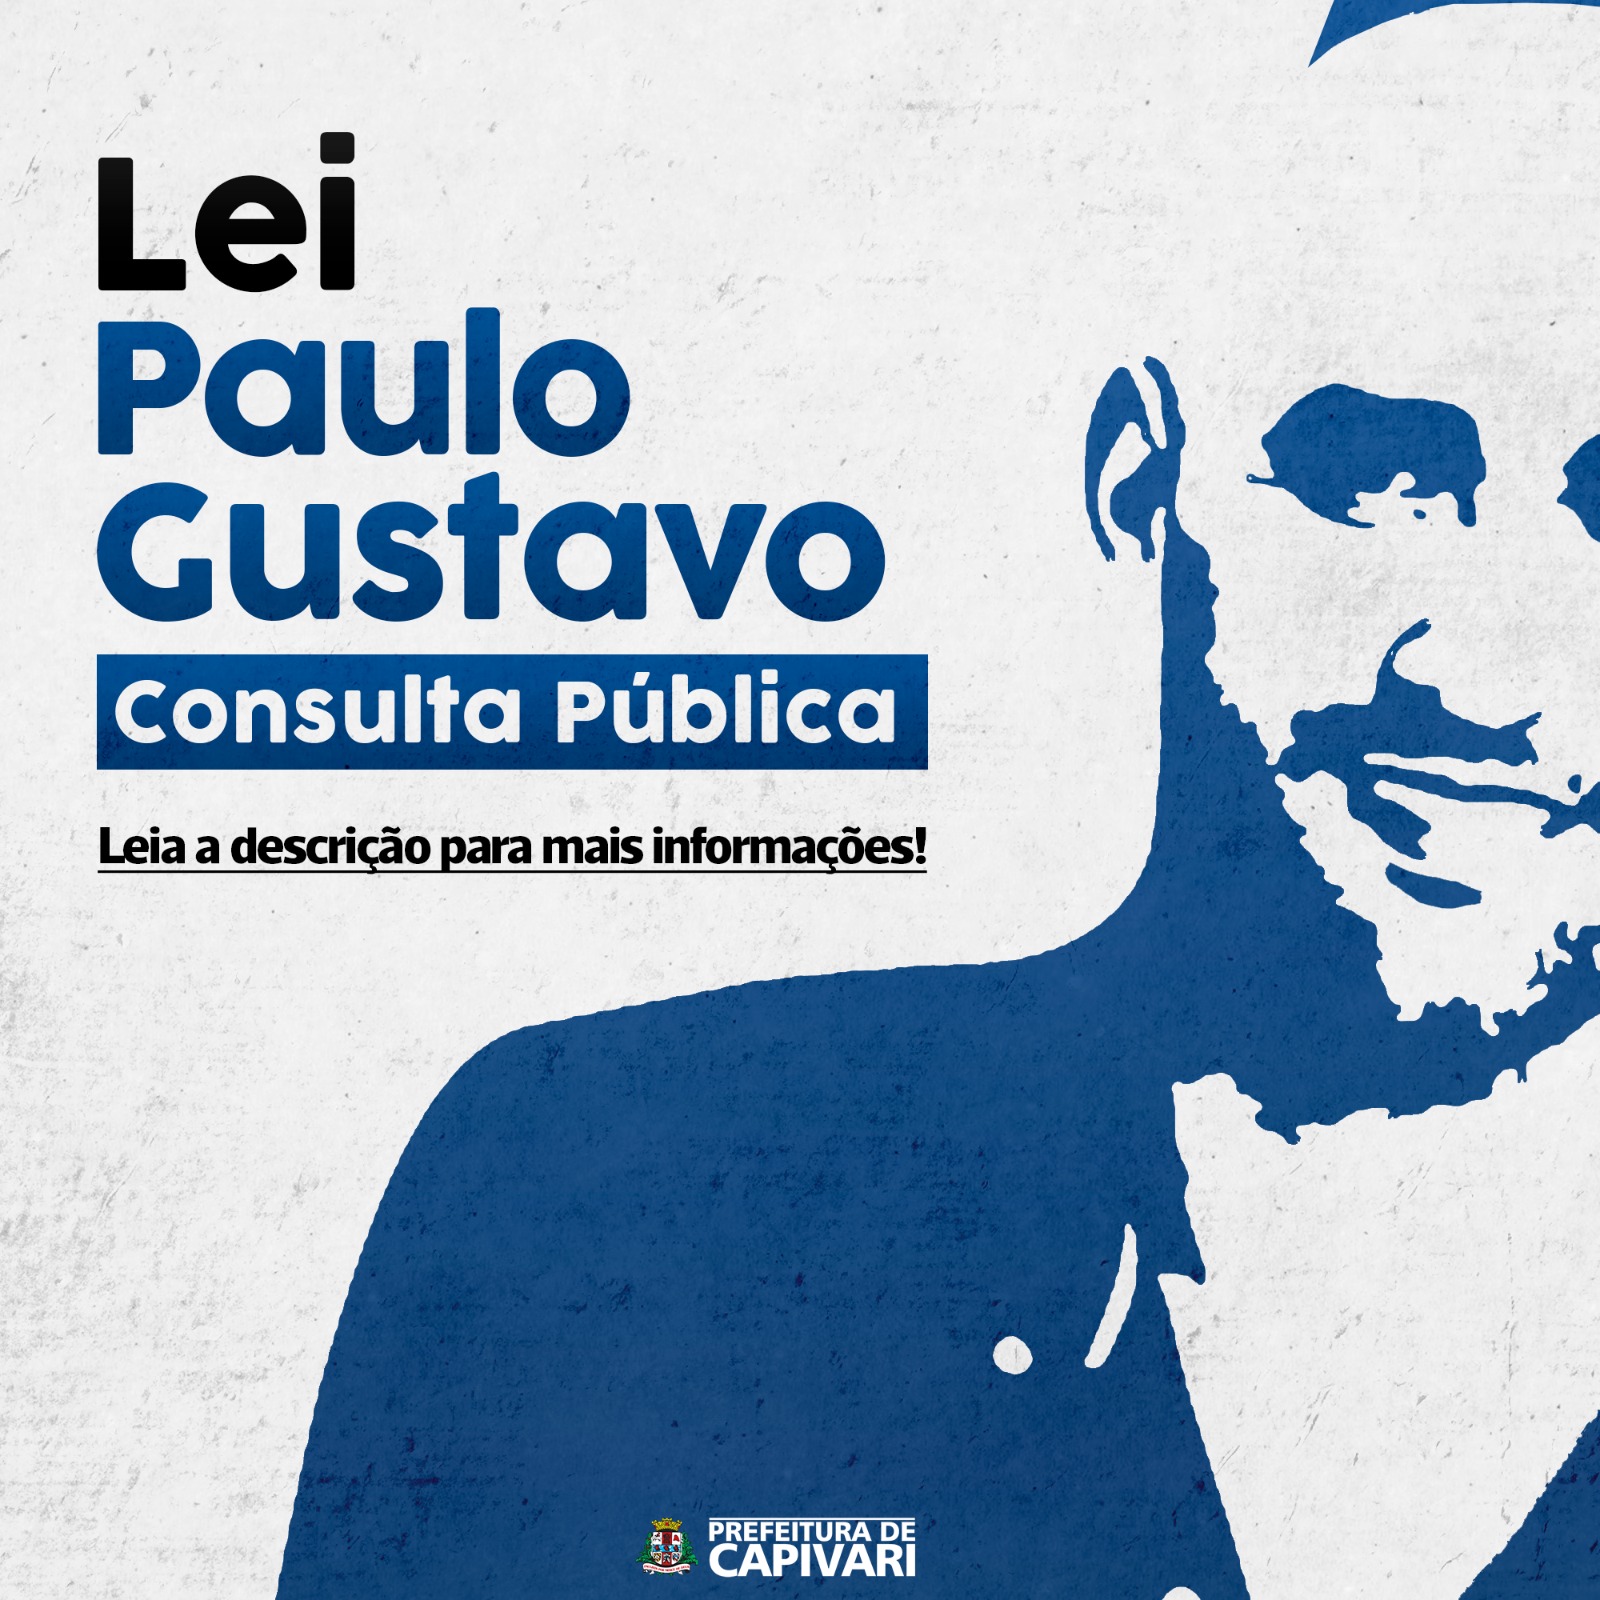 Consulta Pública referente à Lei Paulo Gustavo pode ser realizada até o dia 07 de abril